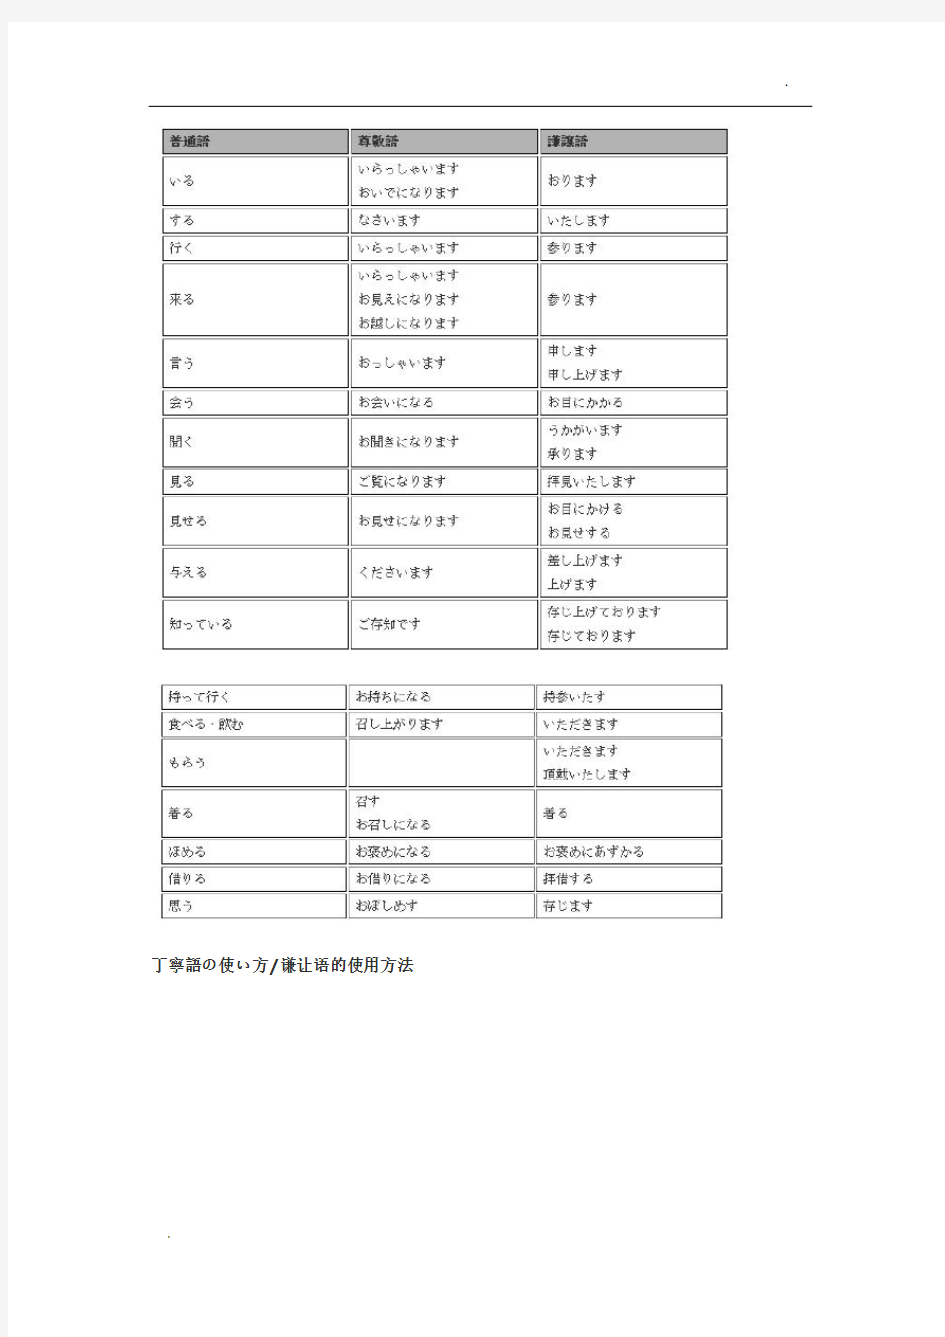 日语敬语表格对照